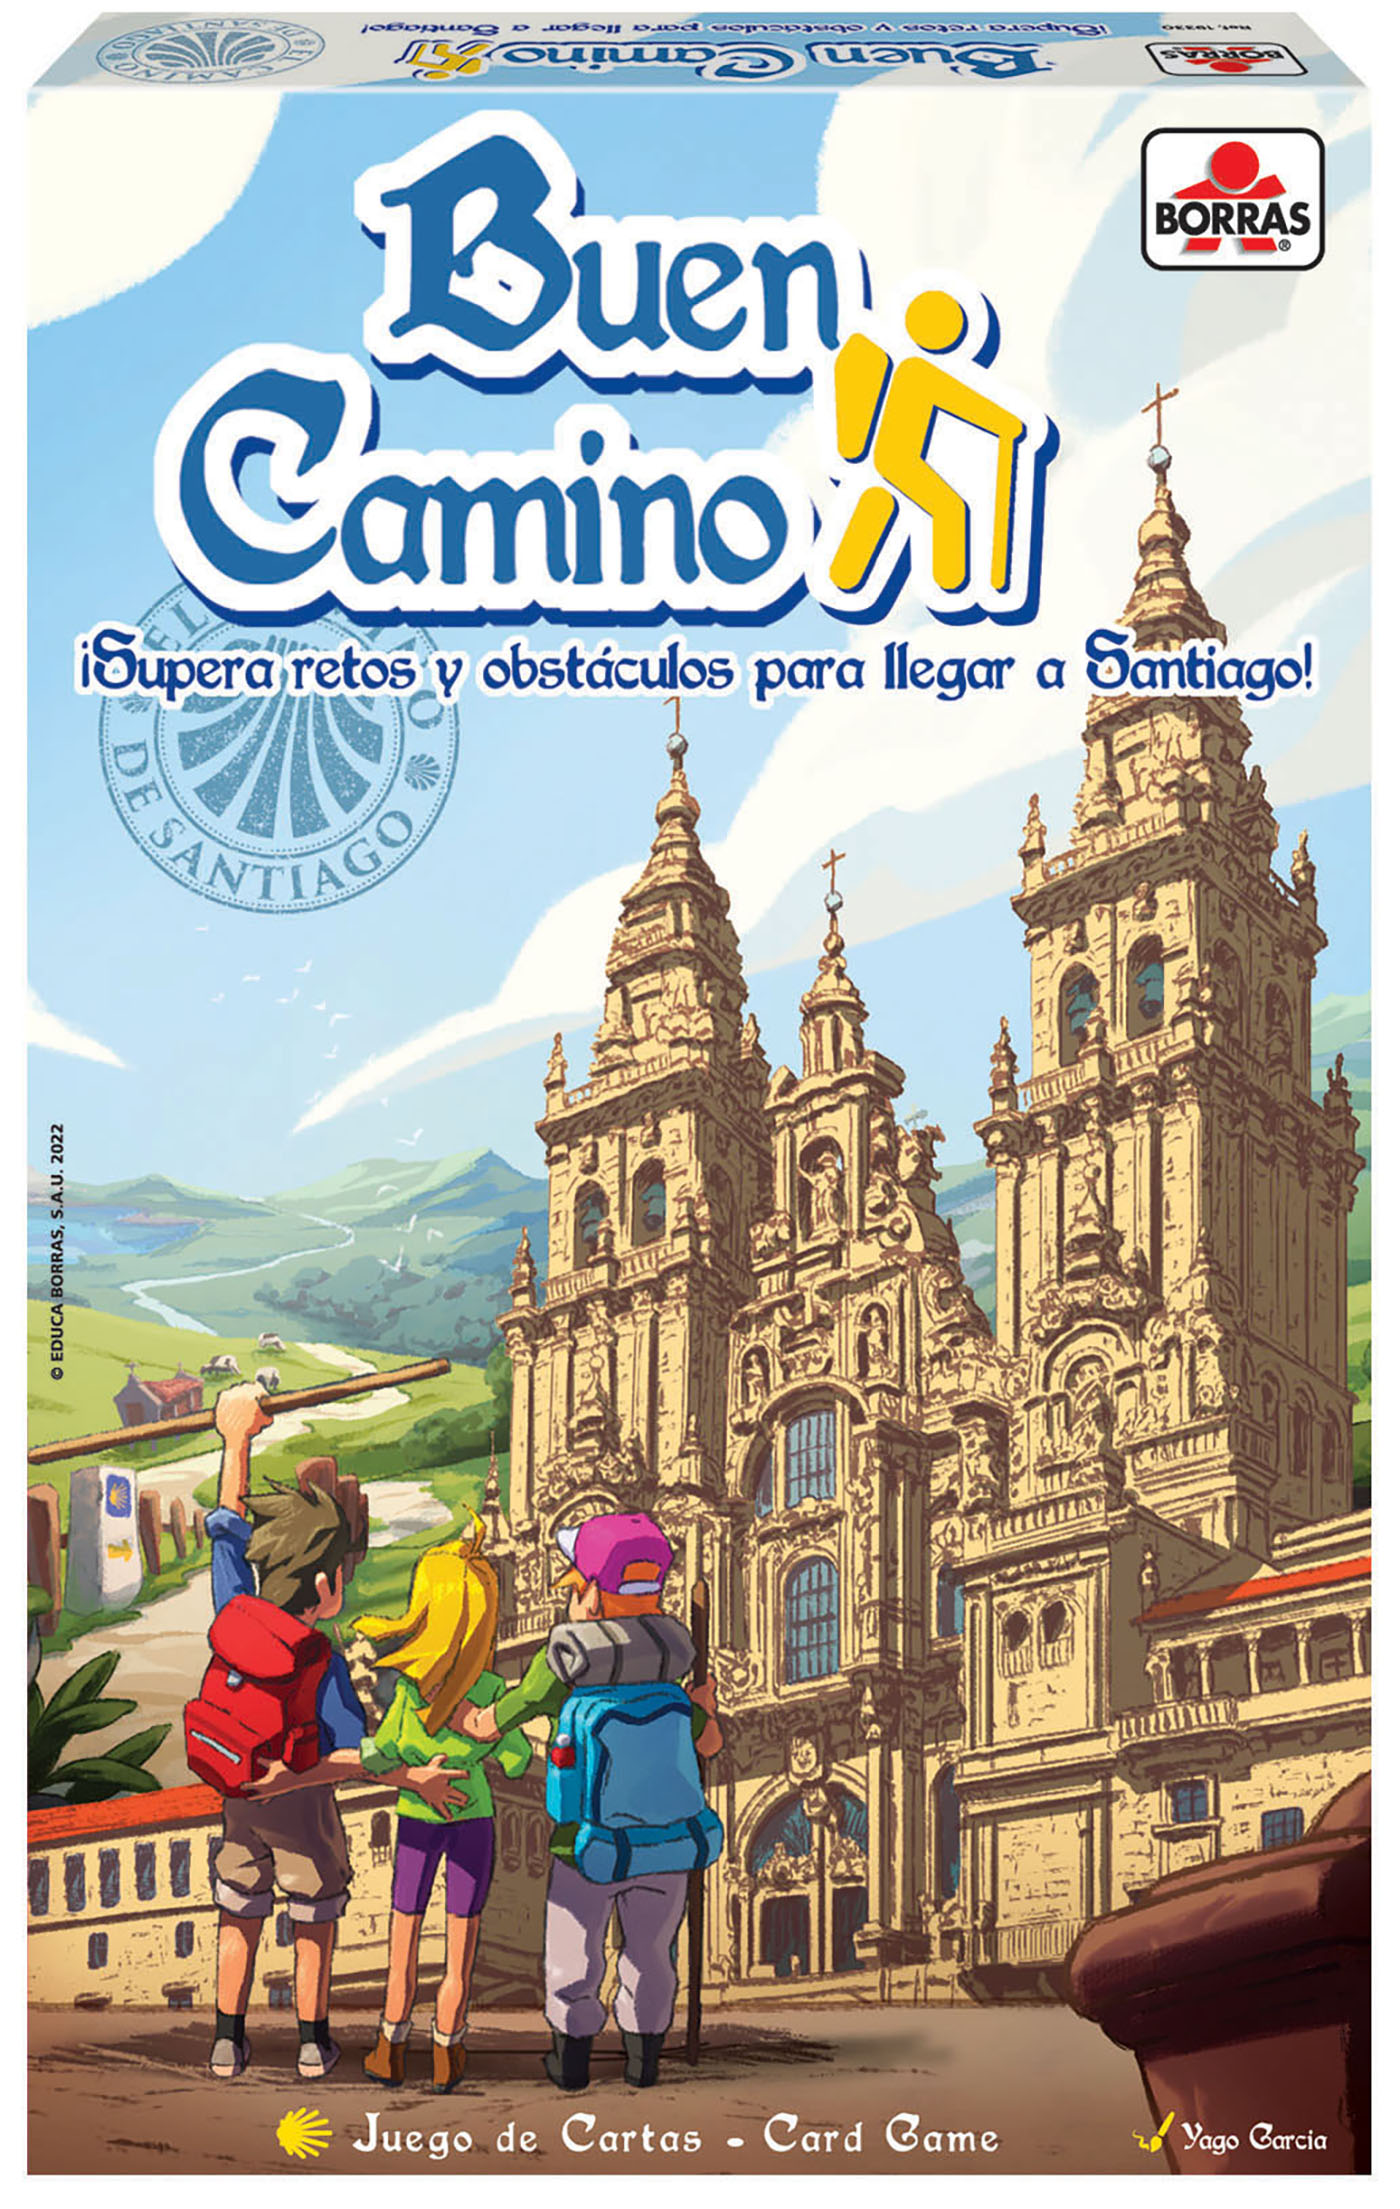 BUEN CAMINO (card game)